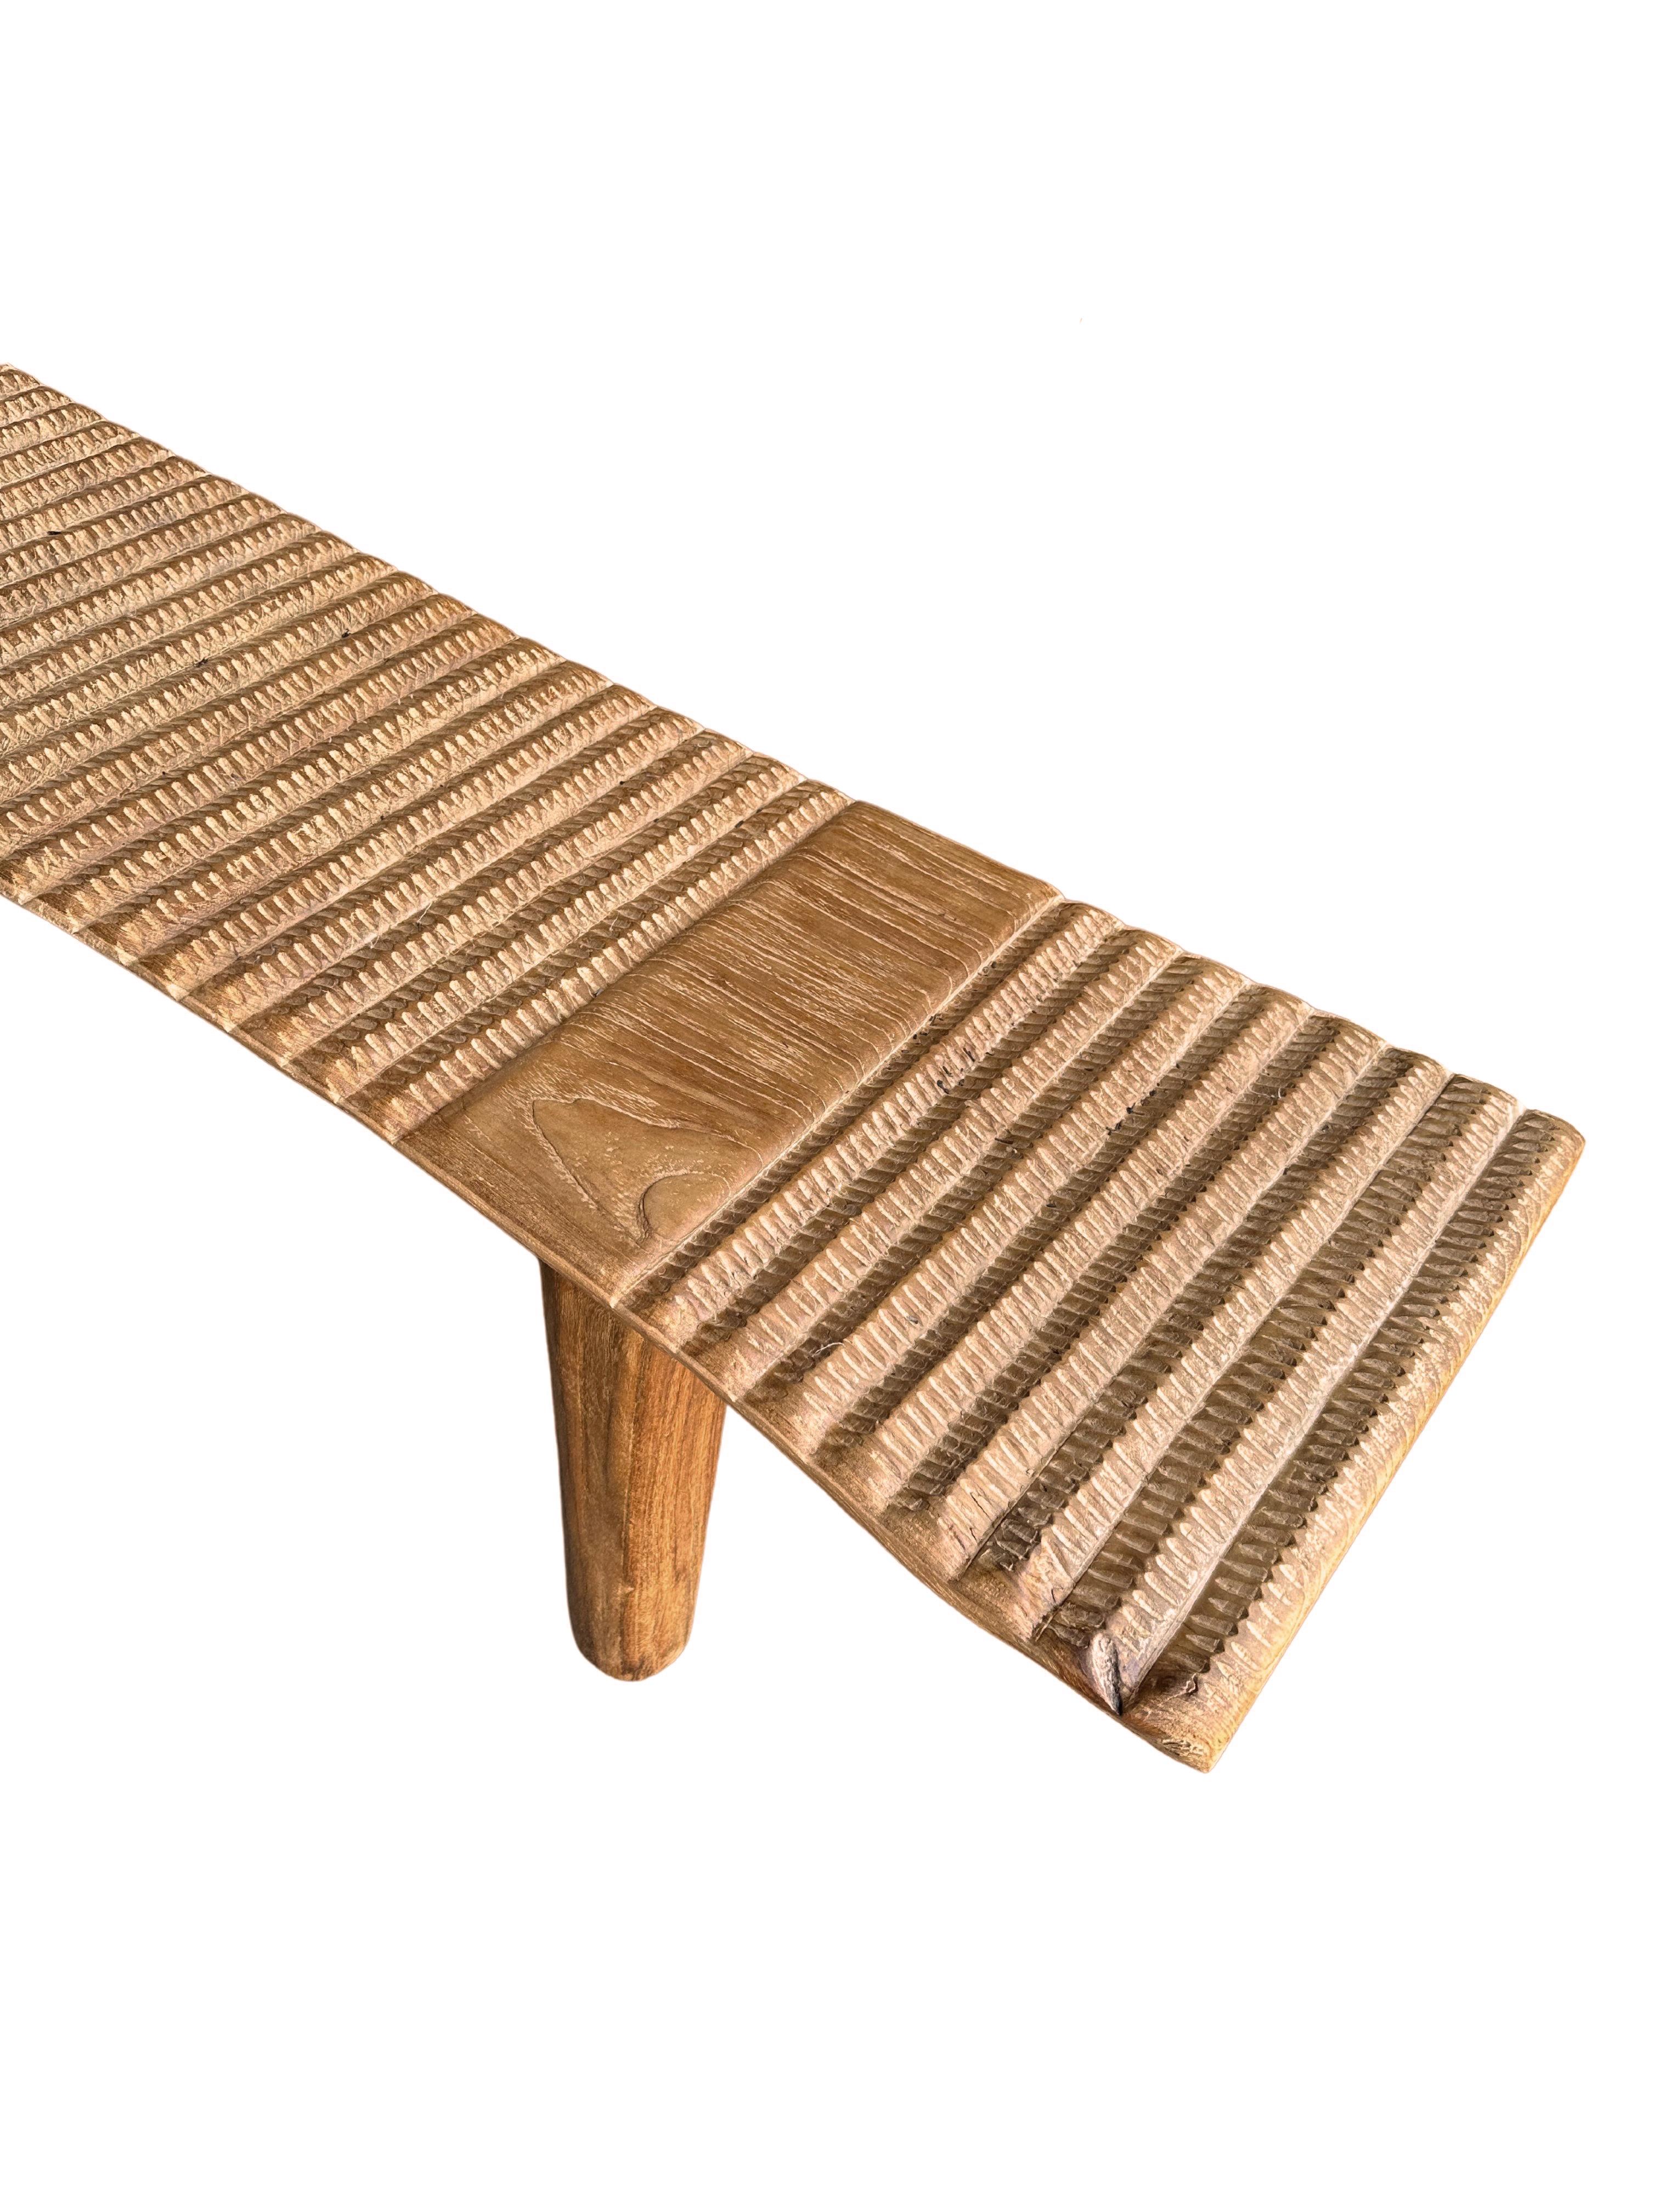 Hand-Carved Teak Wood Sculptural Long Bench, Carved Detailing, Modern Organic For Sale